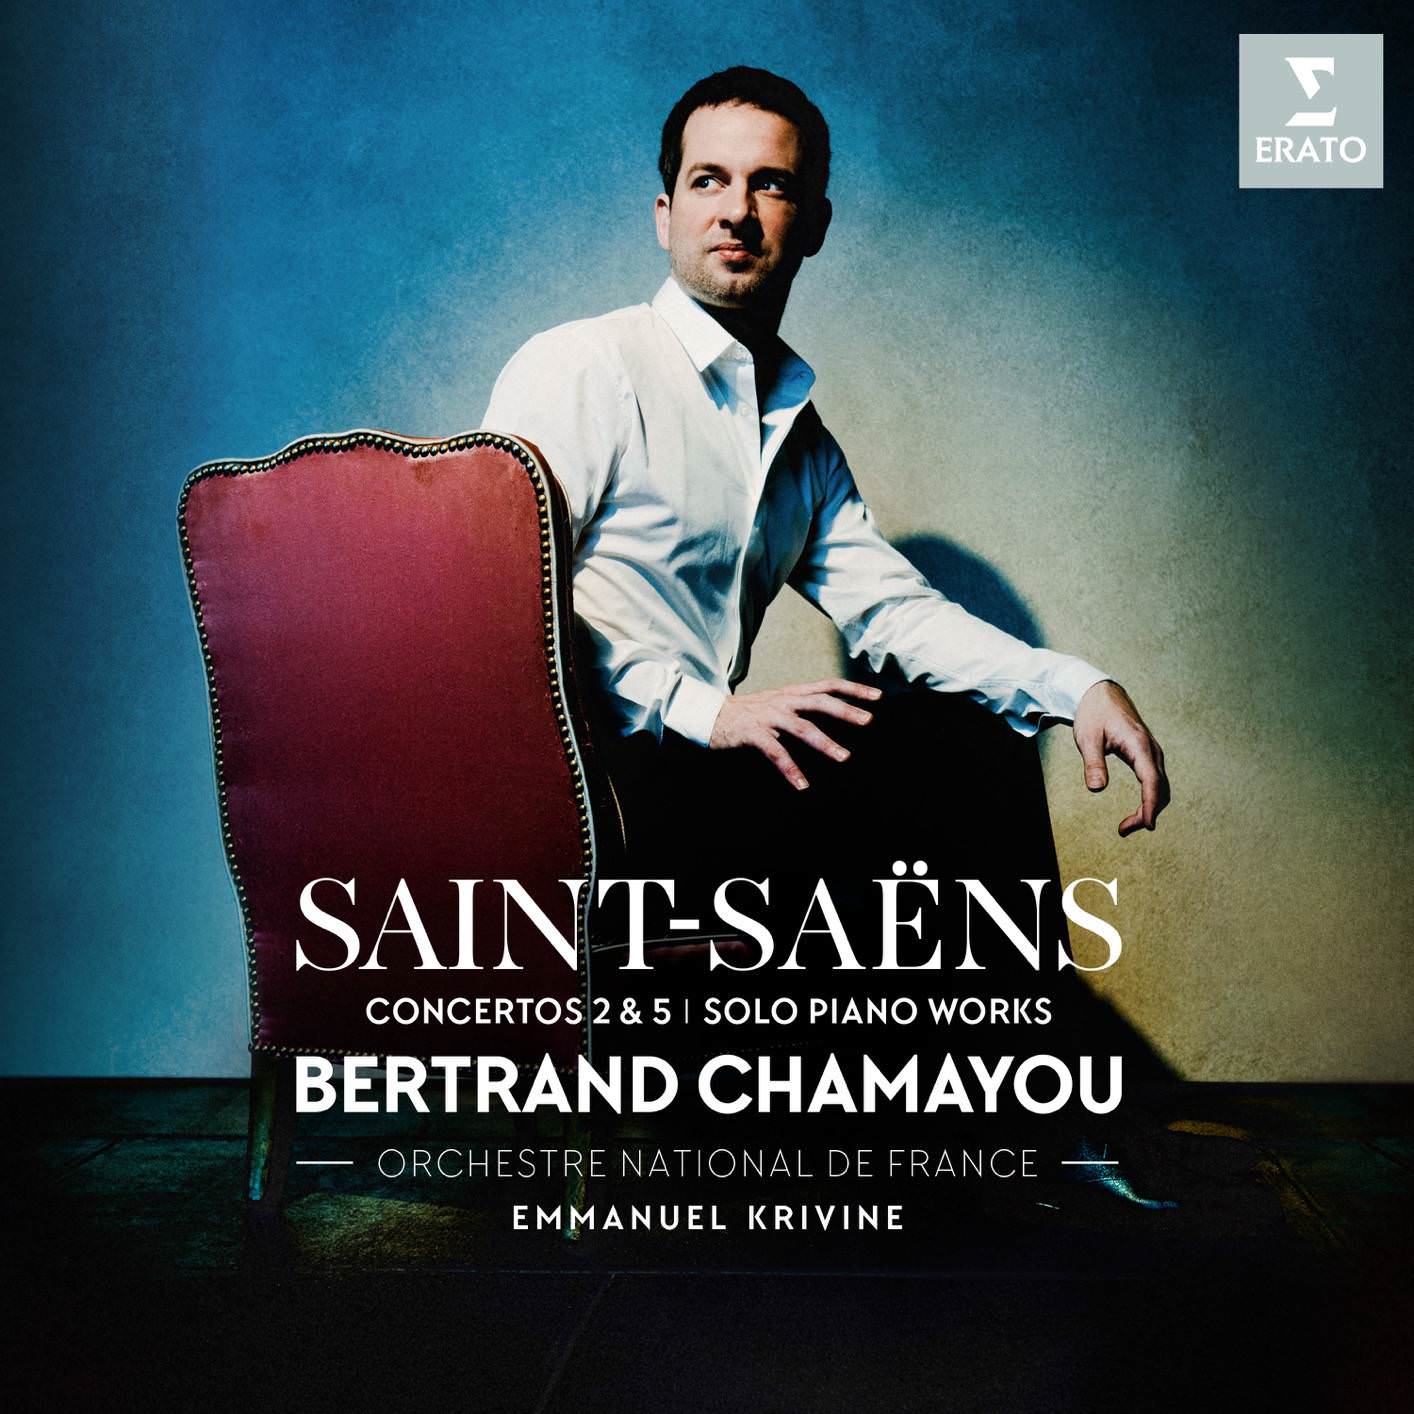 Bertrand Chamayou - Saint-Saens: Piano Concertos Nos 2, 5 & Piano Works (2018) [FLAC 24bit/96kHz]